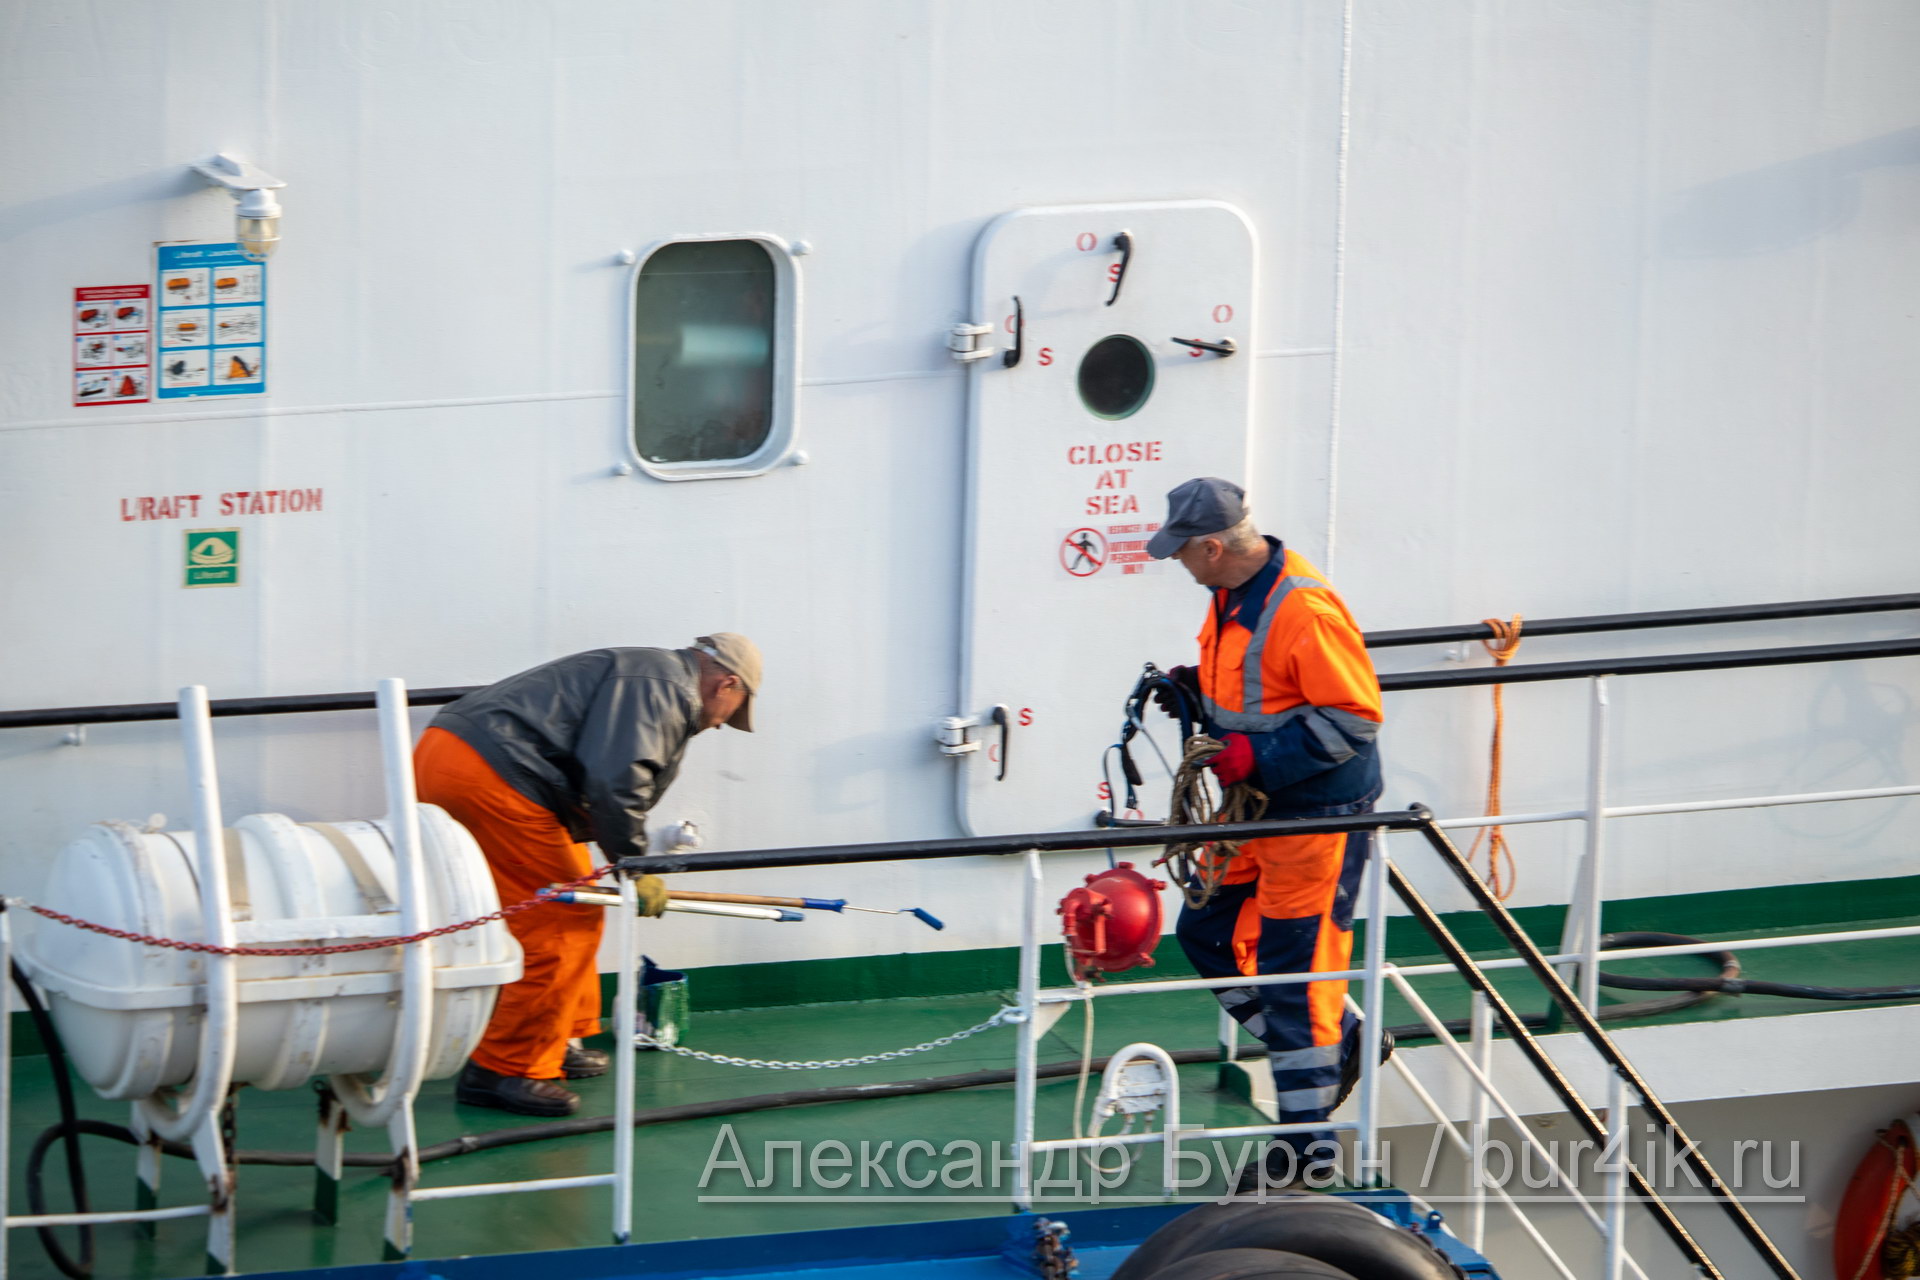 Двое мужчин на борту корабля выполняют работы по покраске палубы - Украина, Одесса, 09,11,2019